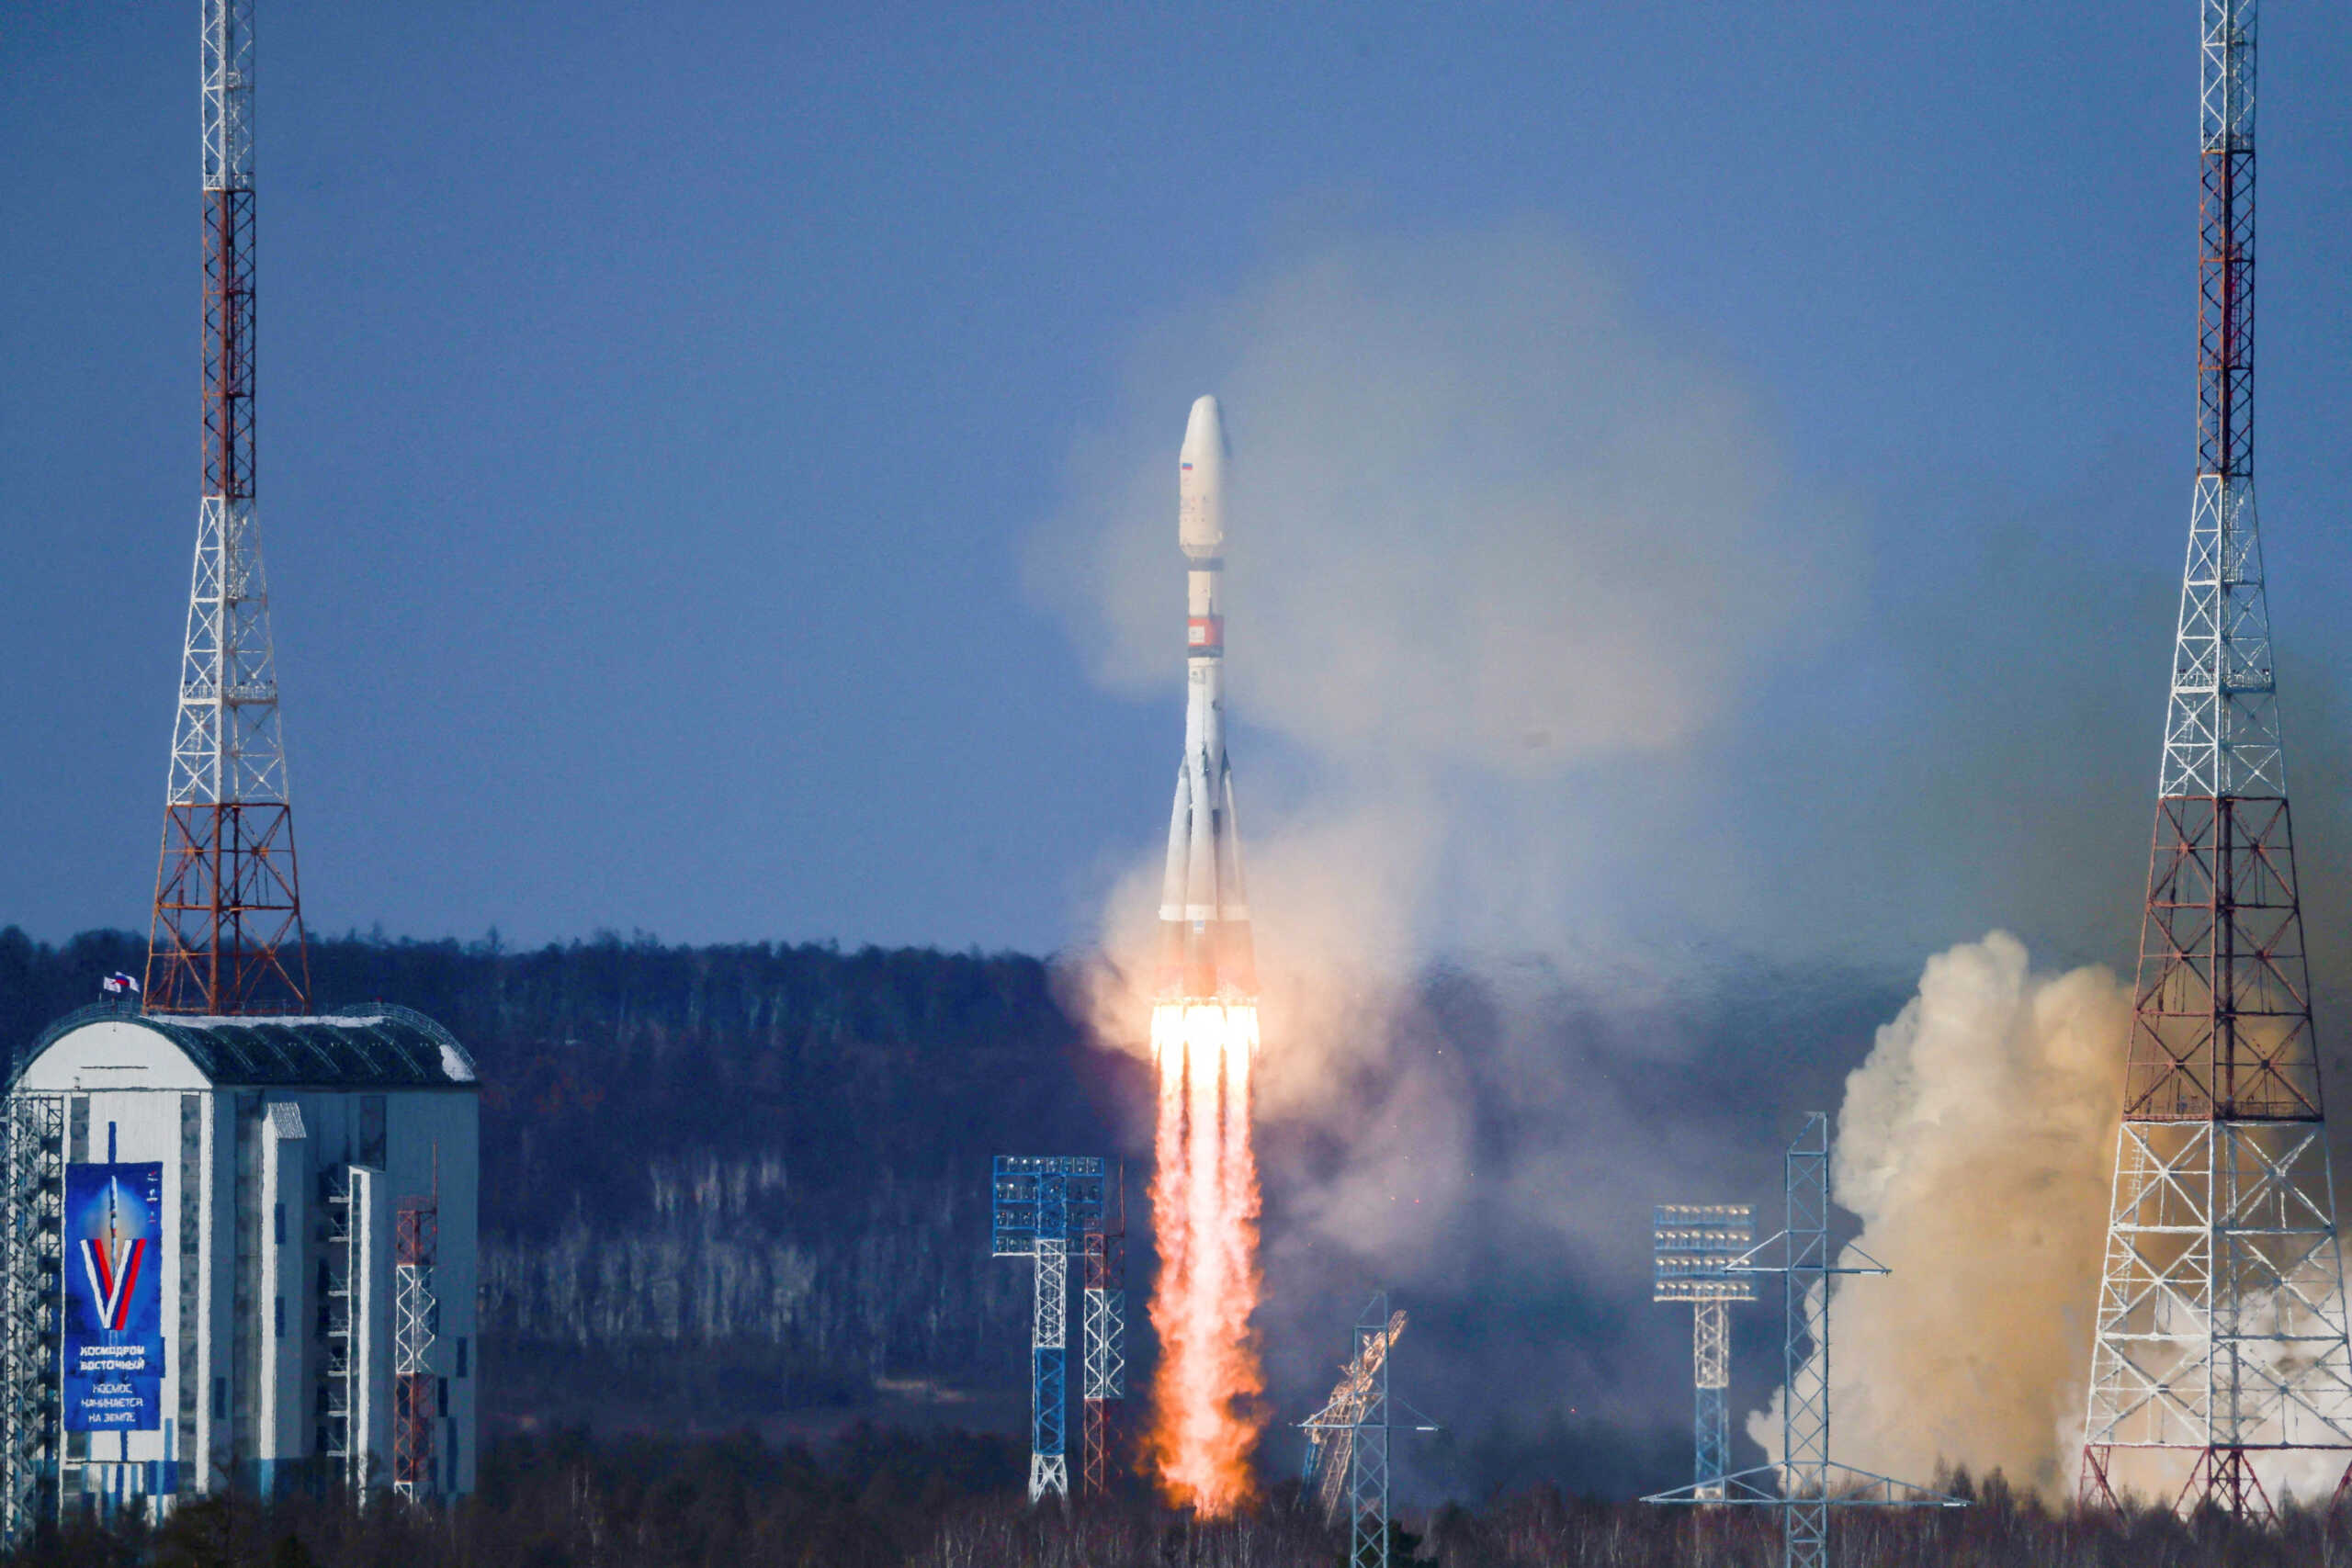 Οι ΗΠΑ κατηγορούν τη Ρωσία πως εκτόξευσε διαστημικό όπλο σε τροχιά δορυφόρου της Ουάσινγκτον